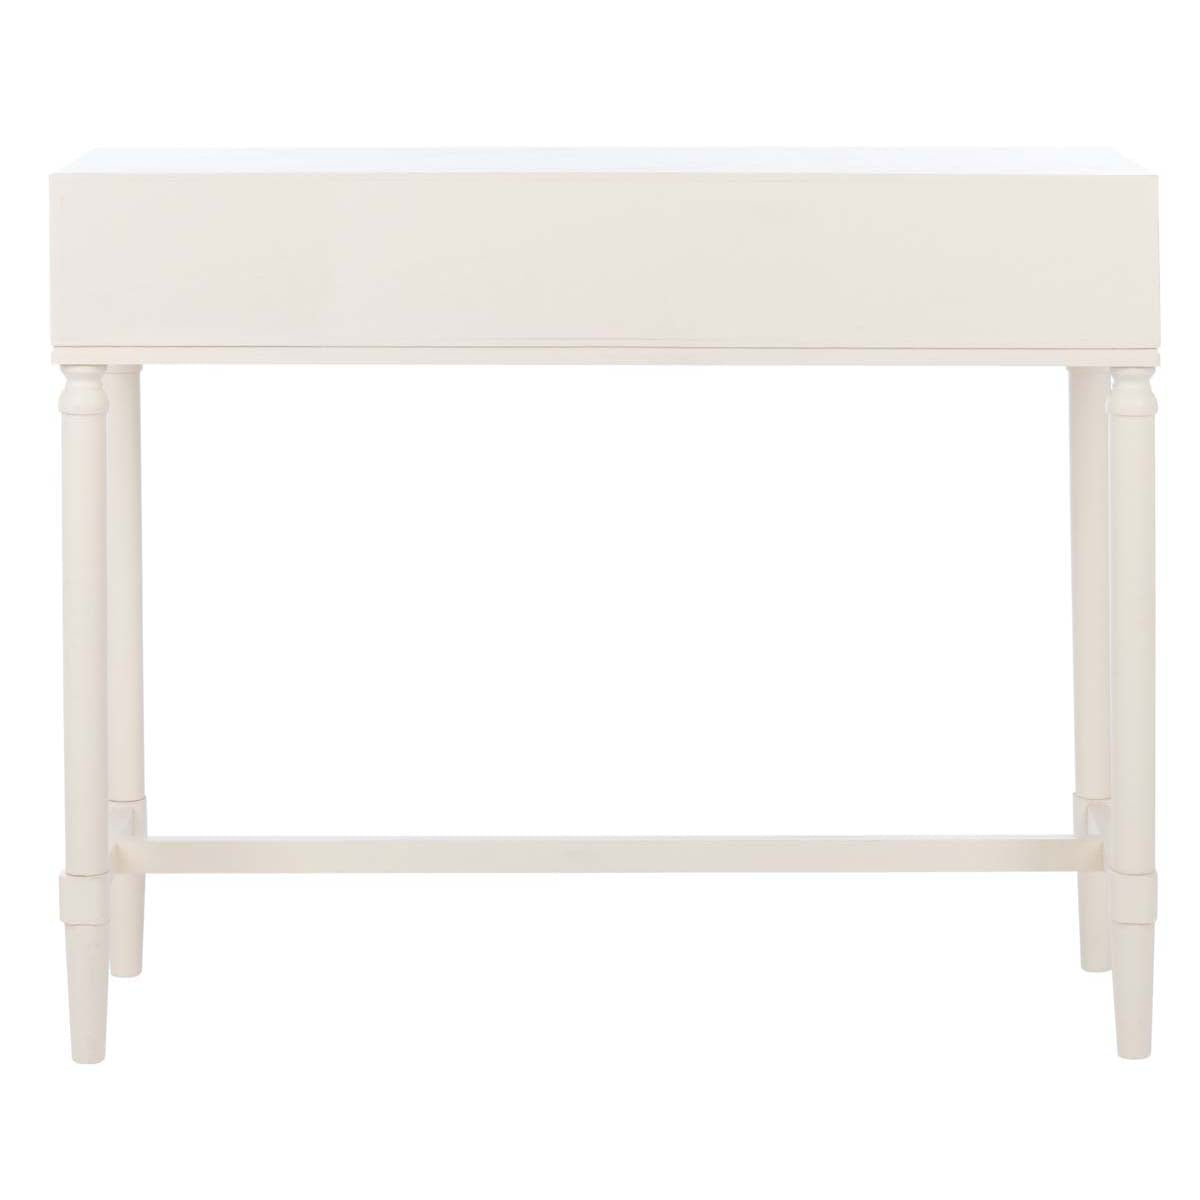 Safavieh Estella 2Drw Console Table , CNS5731 - Distrssed White